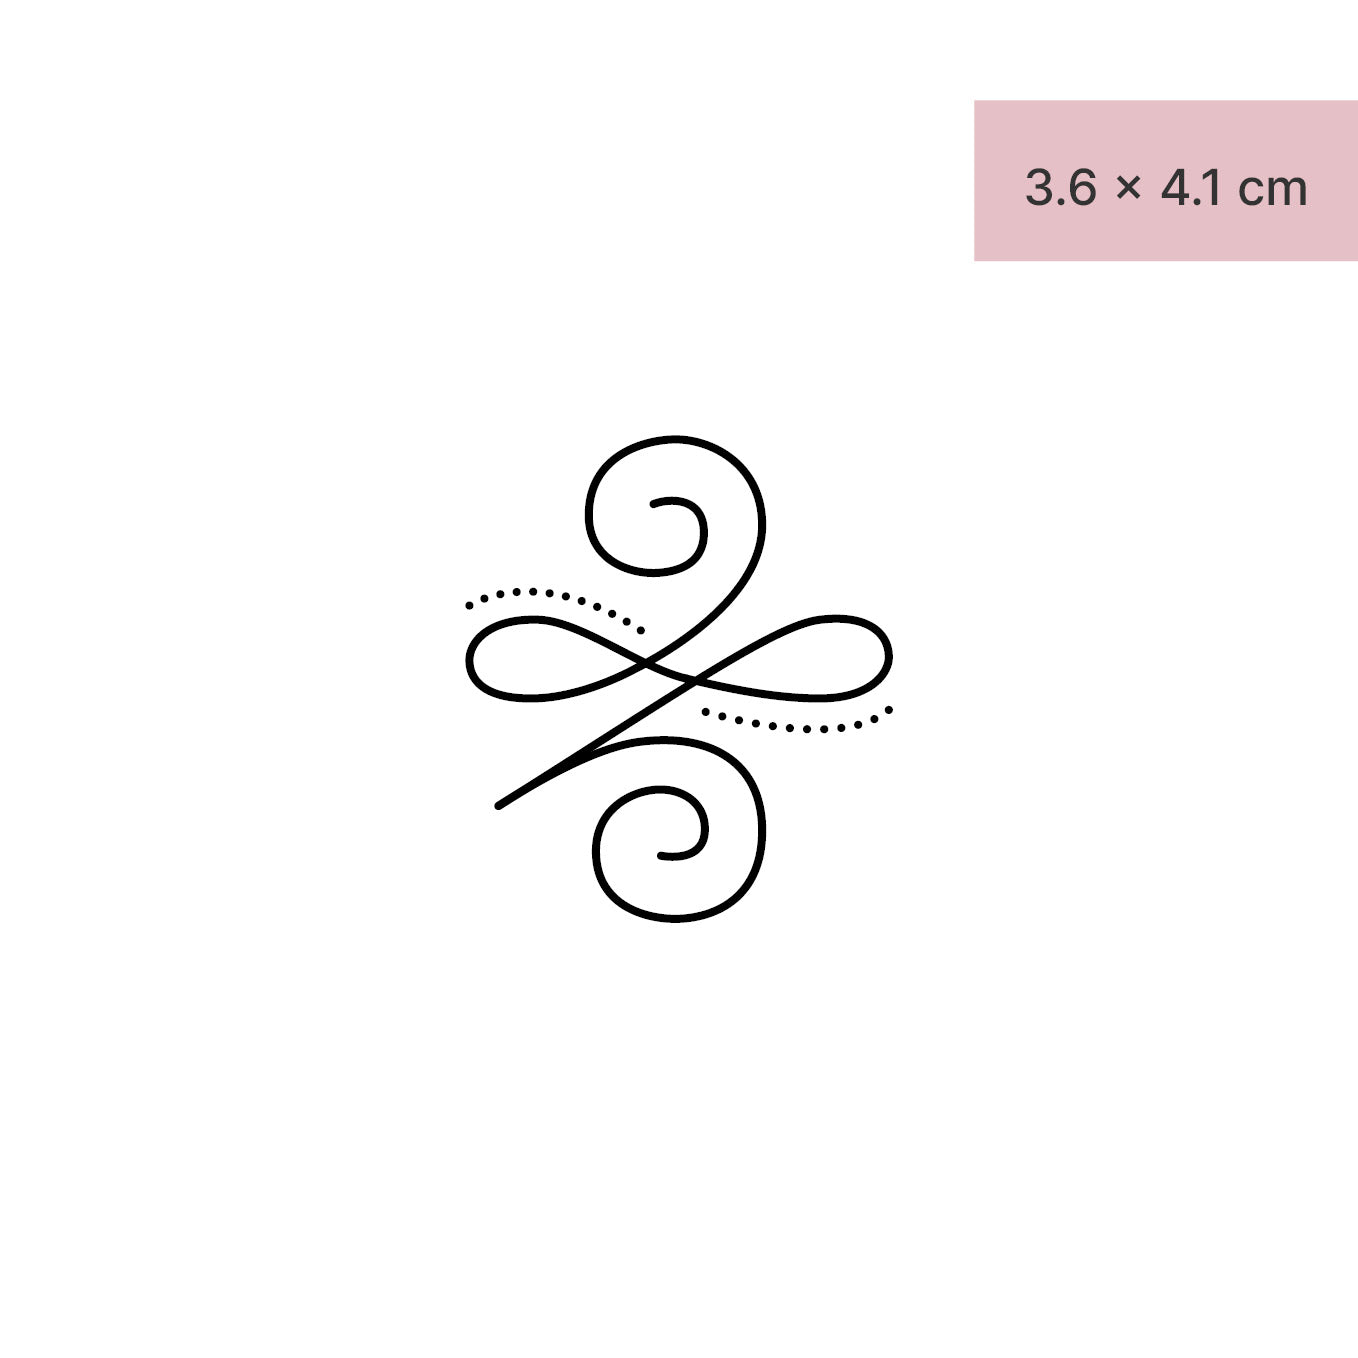 Stärke Symbol Tattoo von minink, der Marke für temporäre Tattoos.